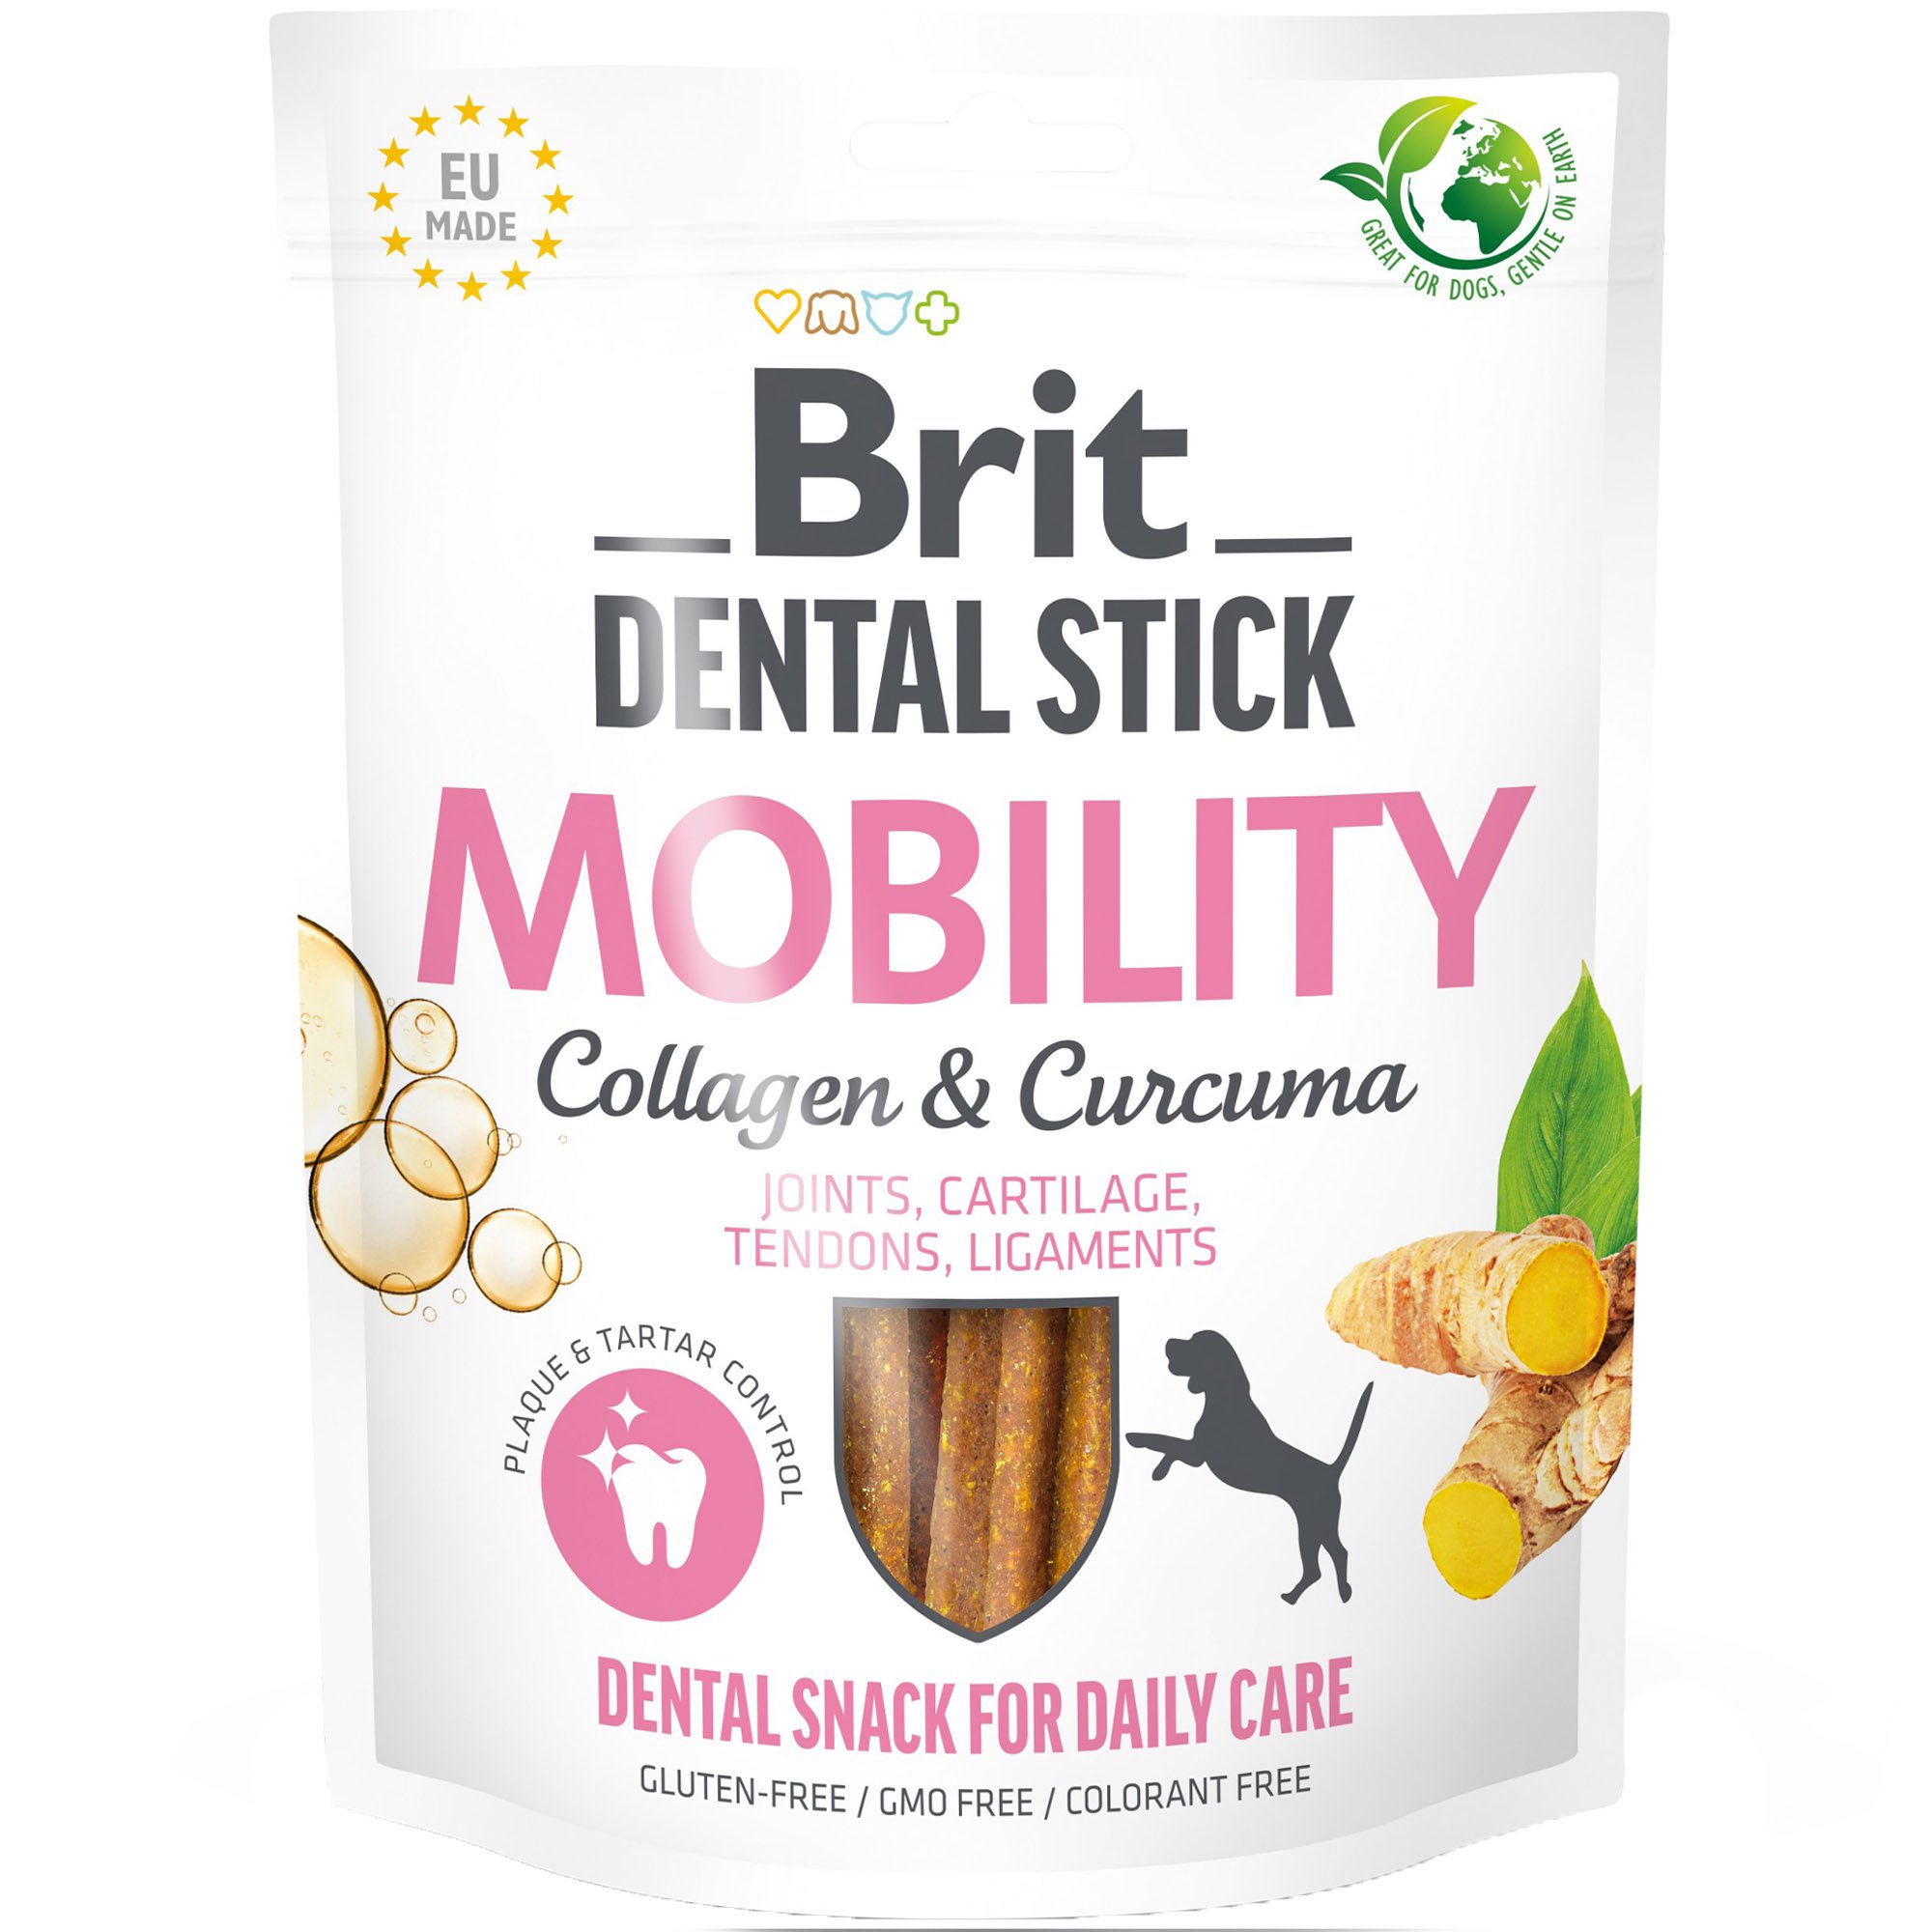 Лакомство для собак Brit Dental Stick Mobility для мобильности суставов, коллаген и куркума 7 шт. 251 г - фото 1